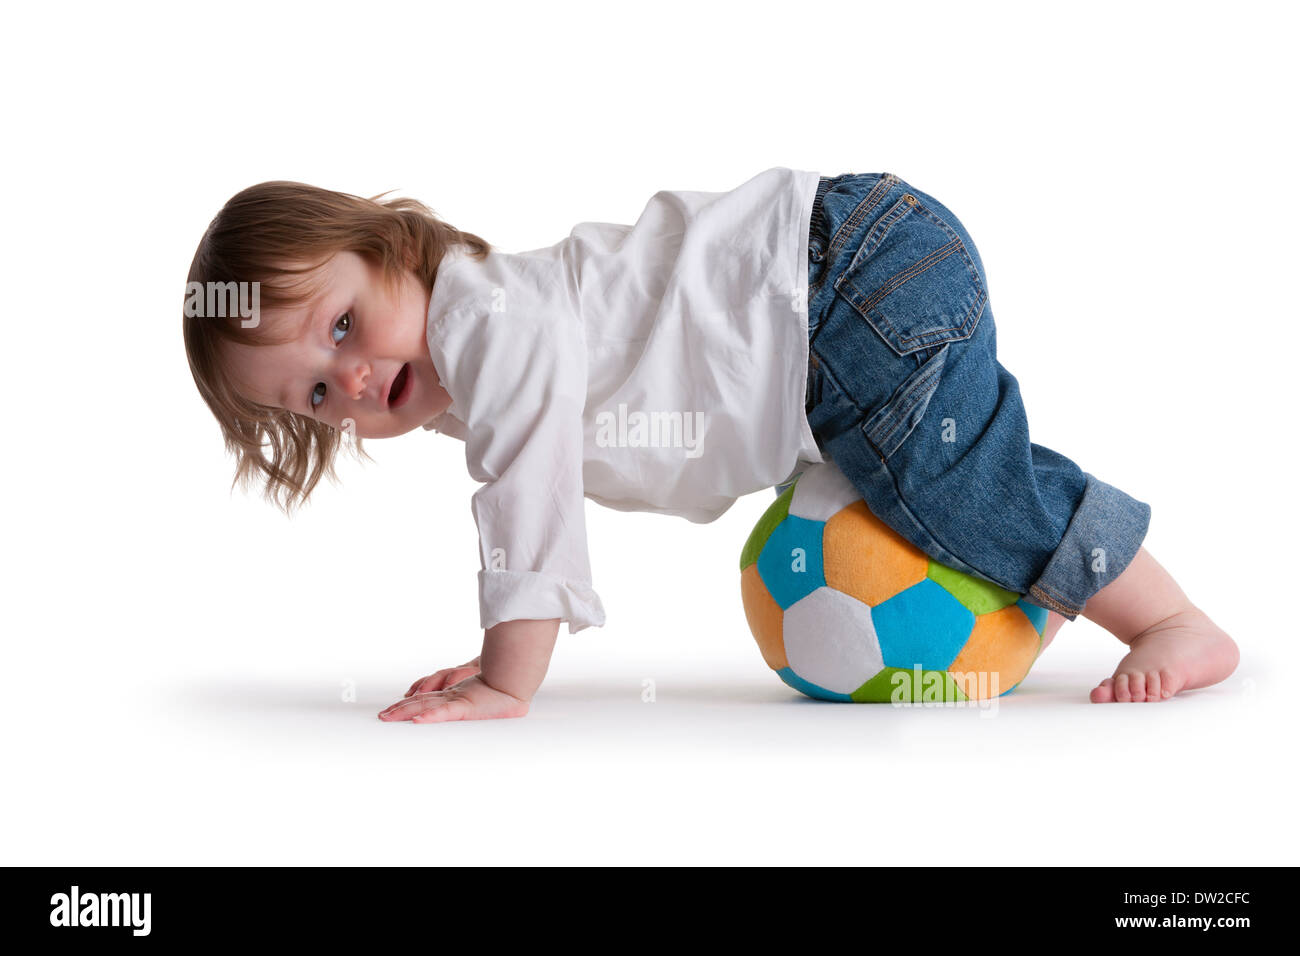 Bébé Garçon jouant avec une balle sur fond blanc Banque D'Images